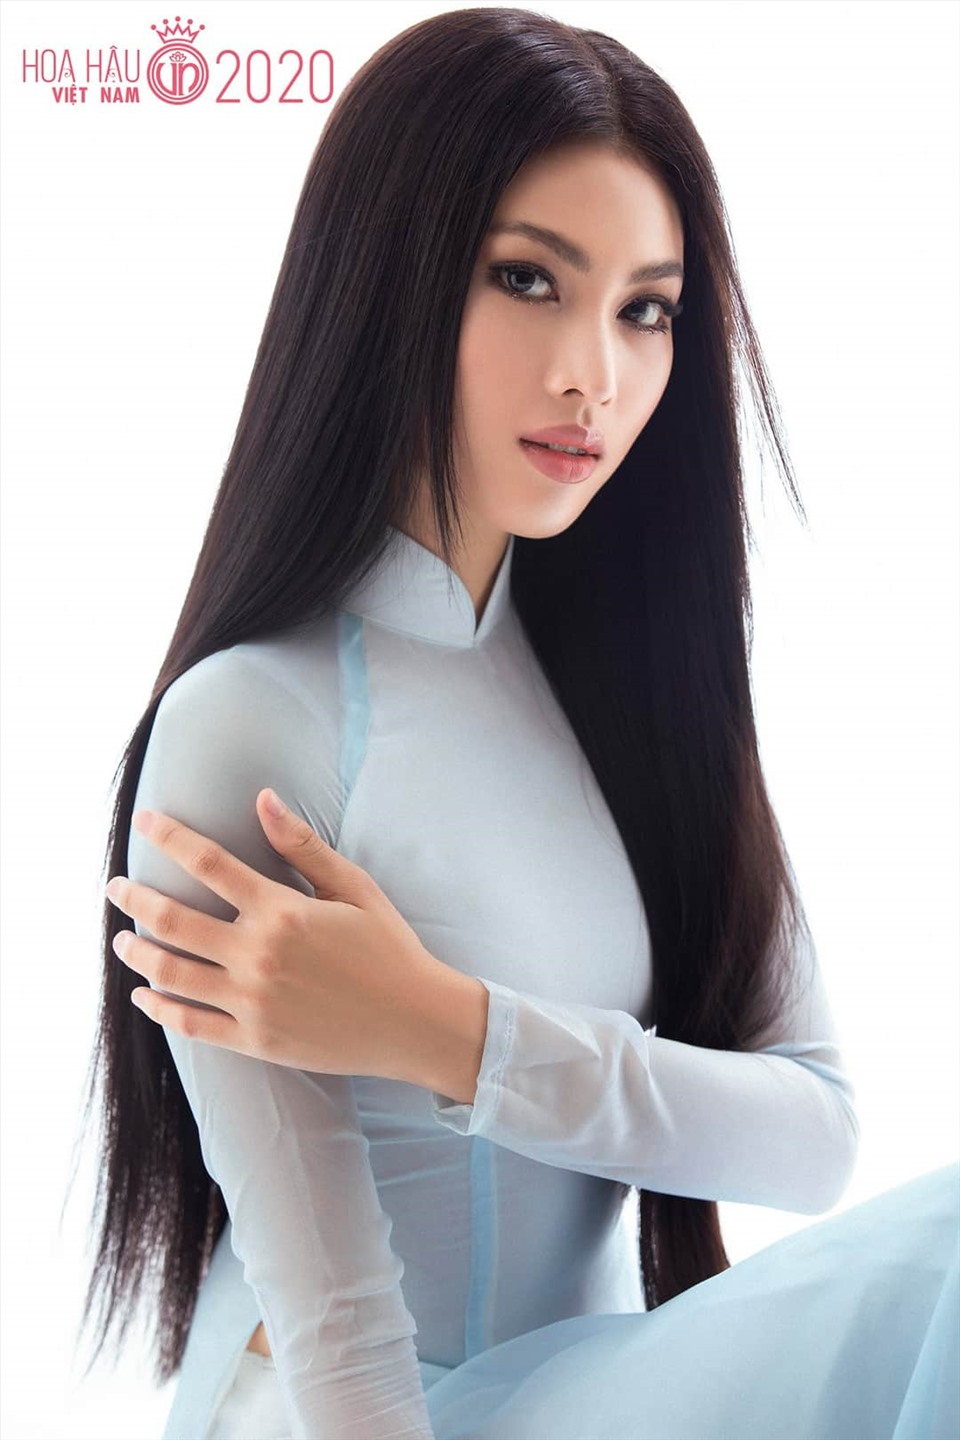 Ngọc Thảo gây ấn tượng mạnh với các fan sắc đẹp bởi thần thái sắc lạnh, mái tóc thẳng rẽ ngôi giữa chuẩn vẻ đẹp của Hoa hậu Việt Nam. Ảnh: Sen Vàng.